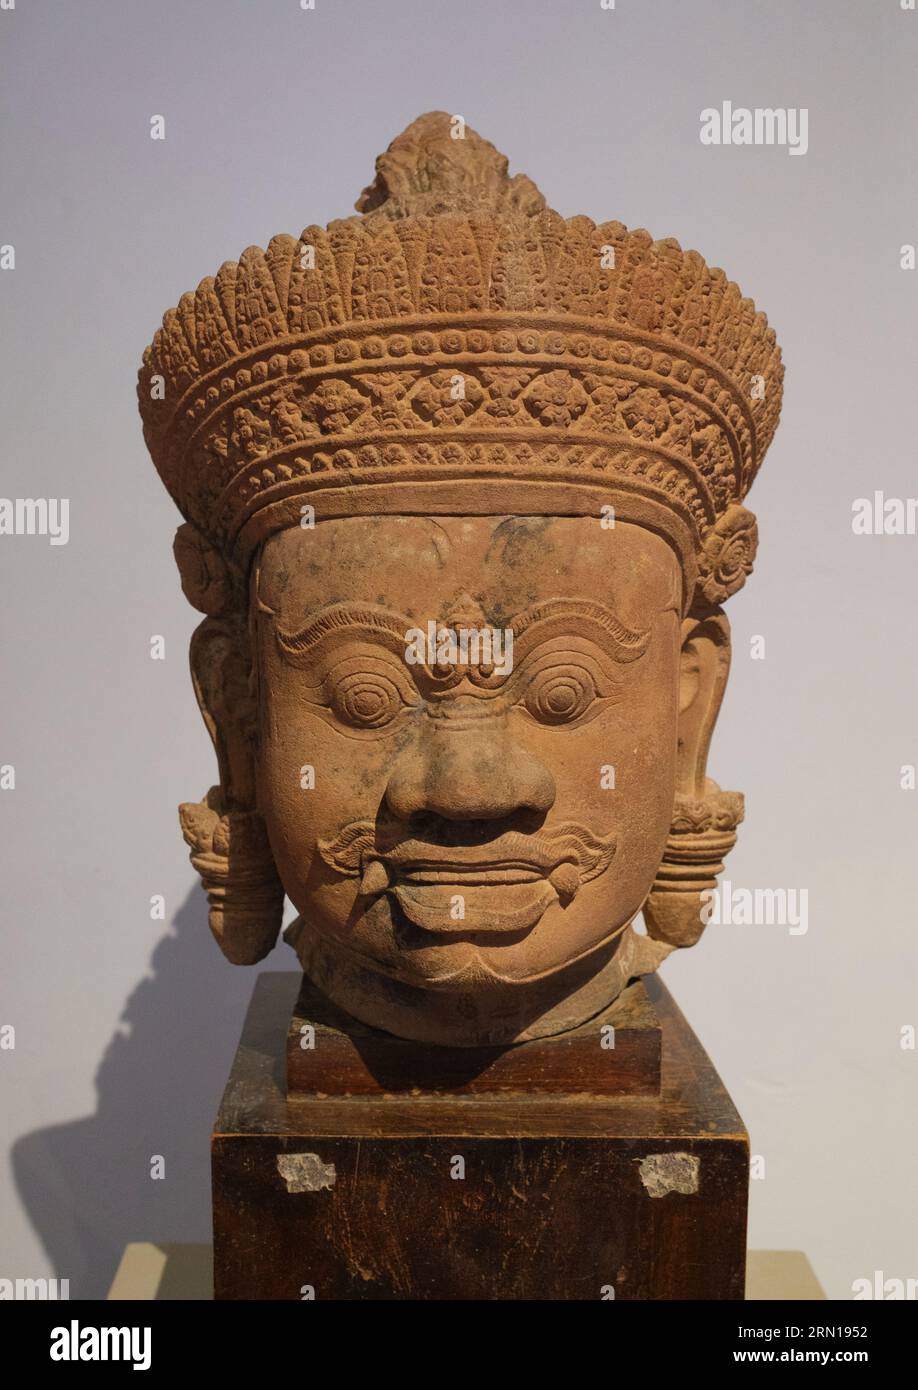 Camboya: Una cabeza de piedra arenisca del siglo X de una Yaksha (deidad guardiana) originaria del templo Banteay Srei cerca de Siem Reap, ahora en el Museo Nacional de Camboya, Phnom Penh. El Museo Nacional, ubicado en un pabellón rojo construido en 1918, alberga una colección de arte jemer que incluye algunas de las mejores piezas existentes. Las exposiciones incluyen una estatua de Vishnu del siglo VI, una estatua de Shiva del siglo IX y la famosa cabeza esculpida de Jayavarman VII en pose meditativa. Particularmente impresionante es un busto dañado de un Vishnu reclinado, una vez parte de una estatua de bronce masiva encontrada en el oeste de Mebon. Foto de stock